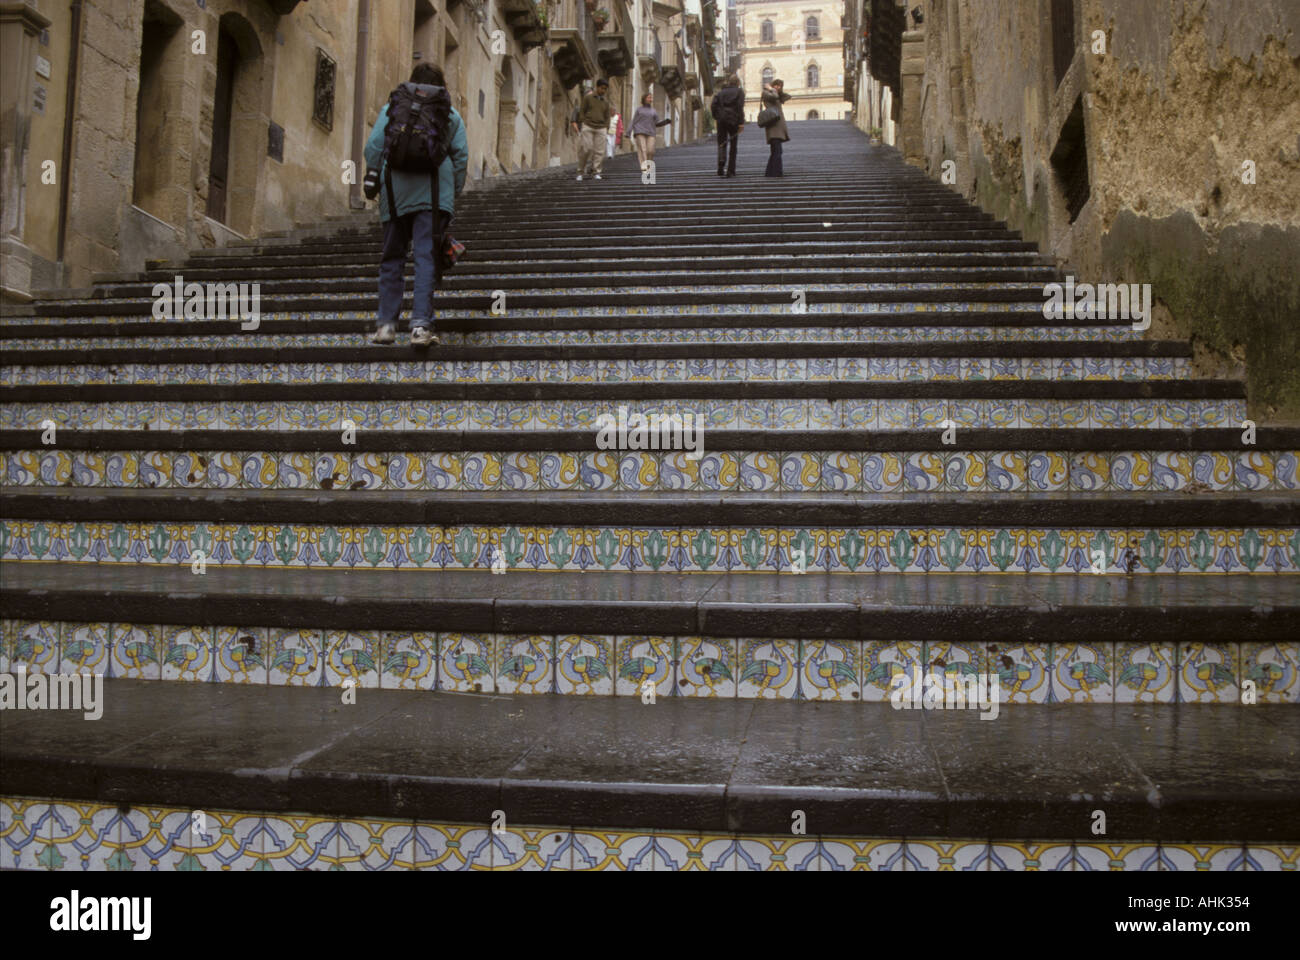 Grand escalier avec ornements en carreaux de céramique céramique Caltagirone ville appelée City Island Sicile Italie Banque D'Images